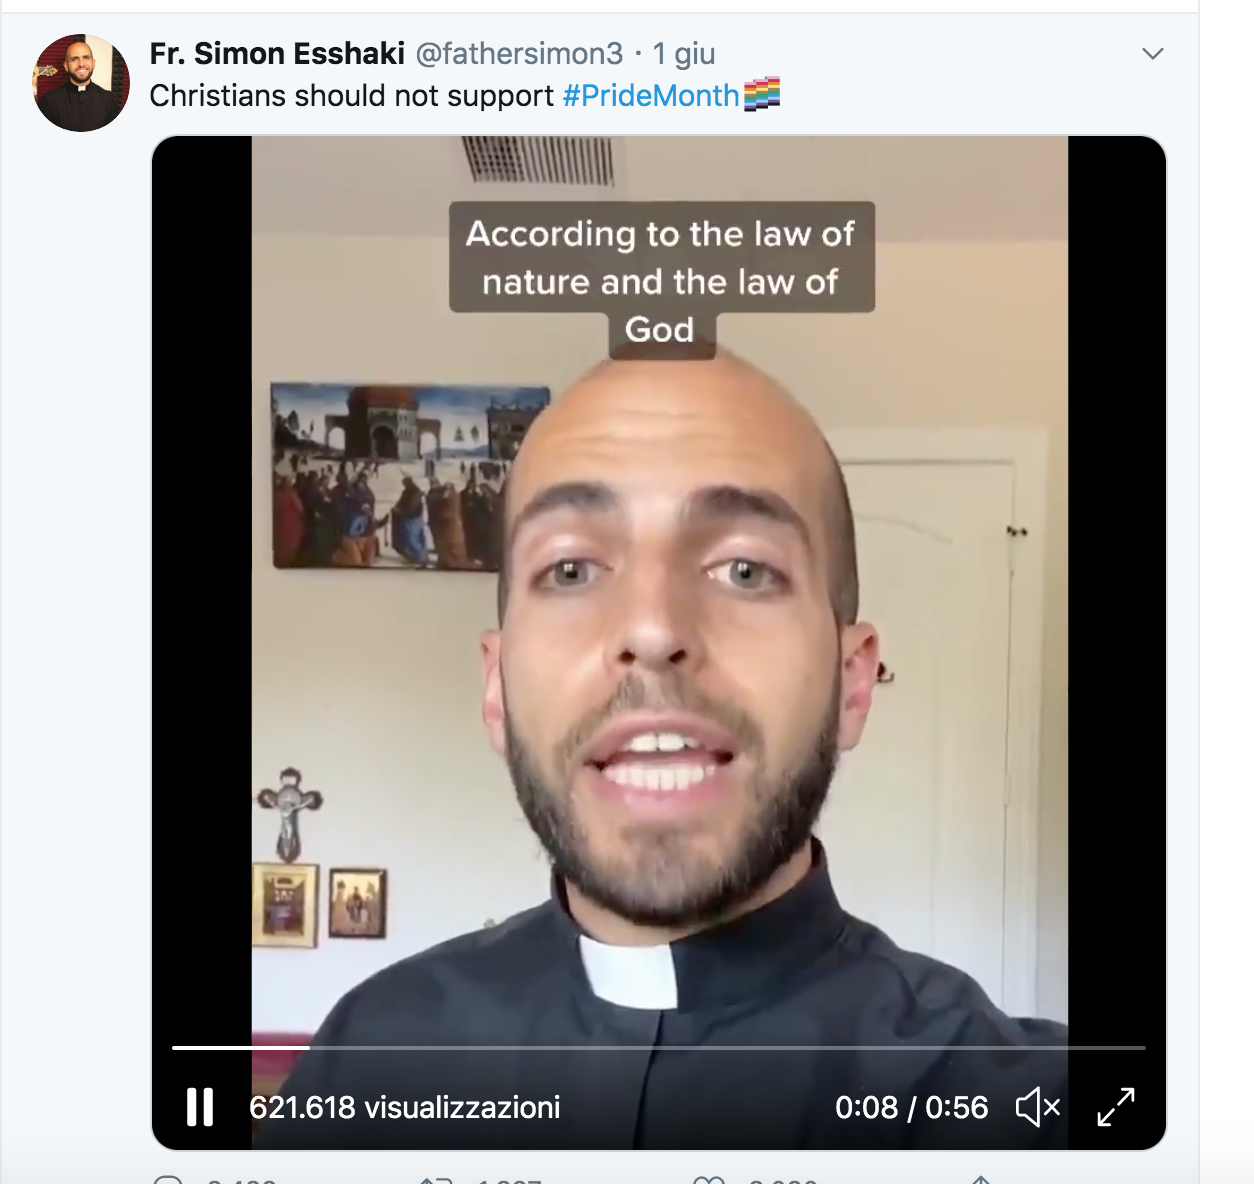 Sacerdote cita il Catechismo contro il Pride Month: massacrato dagli utenti Lgbt 1